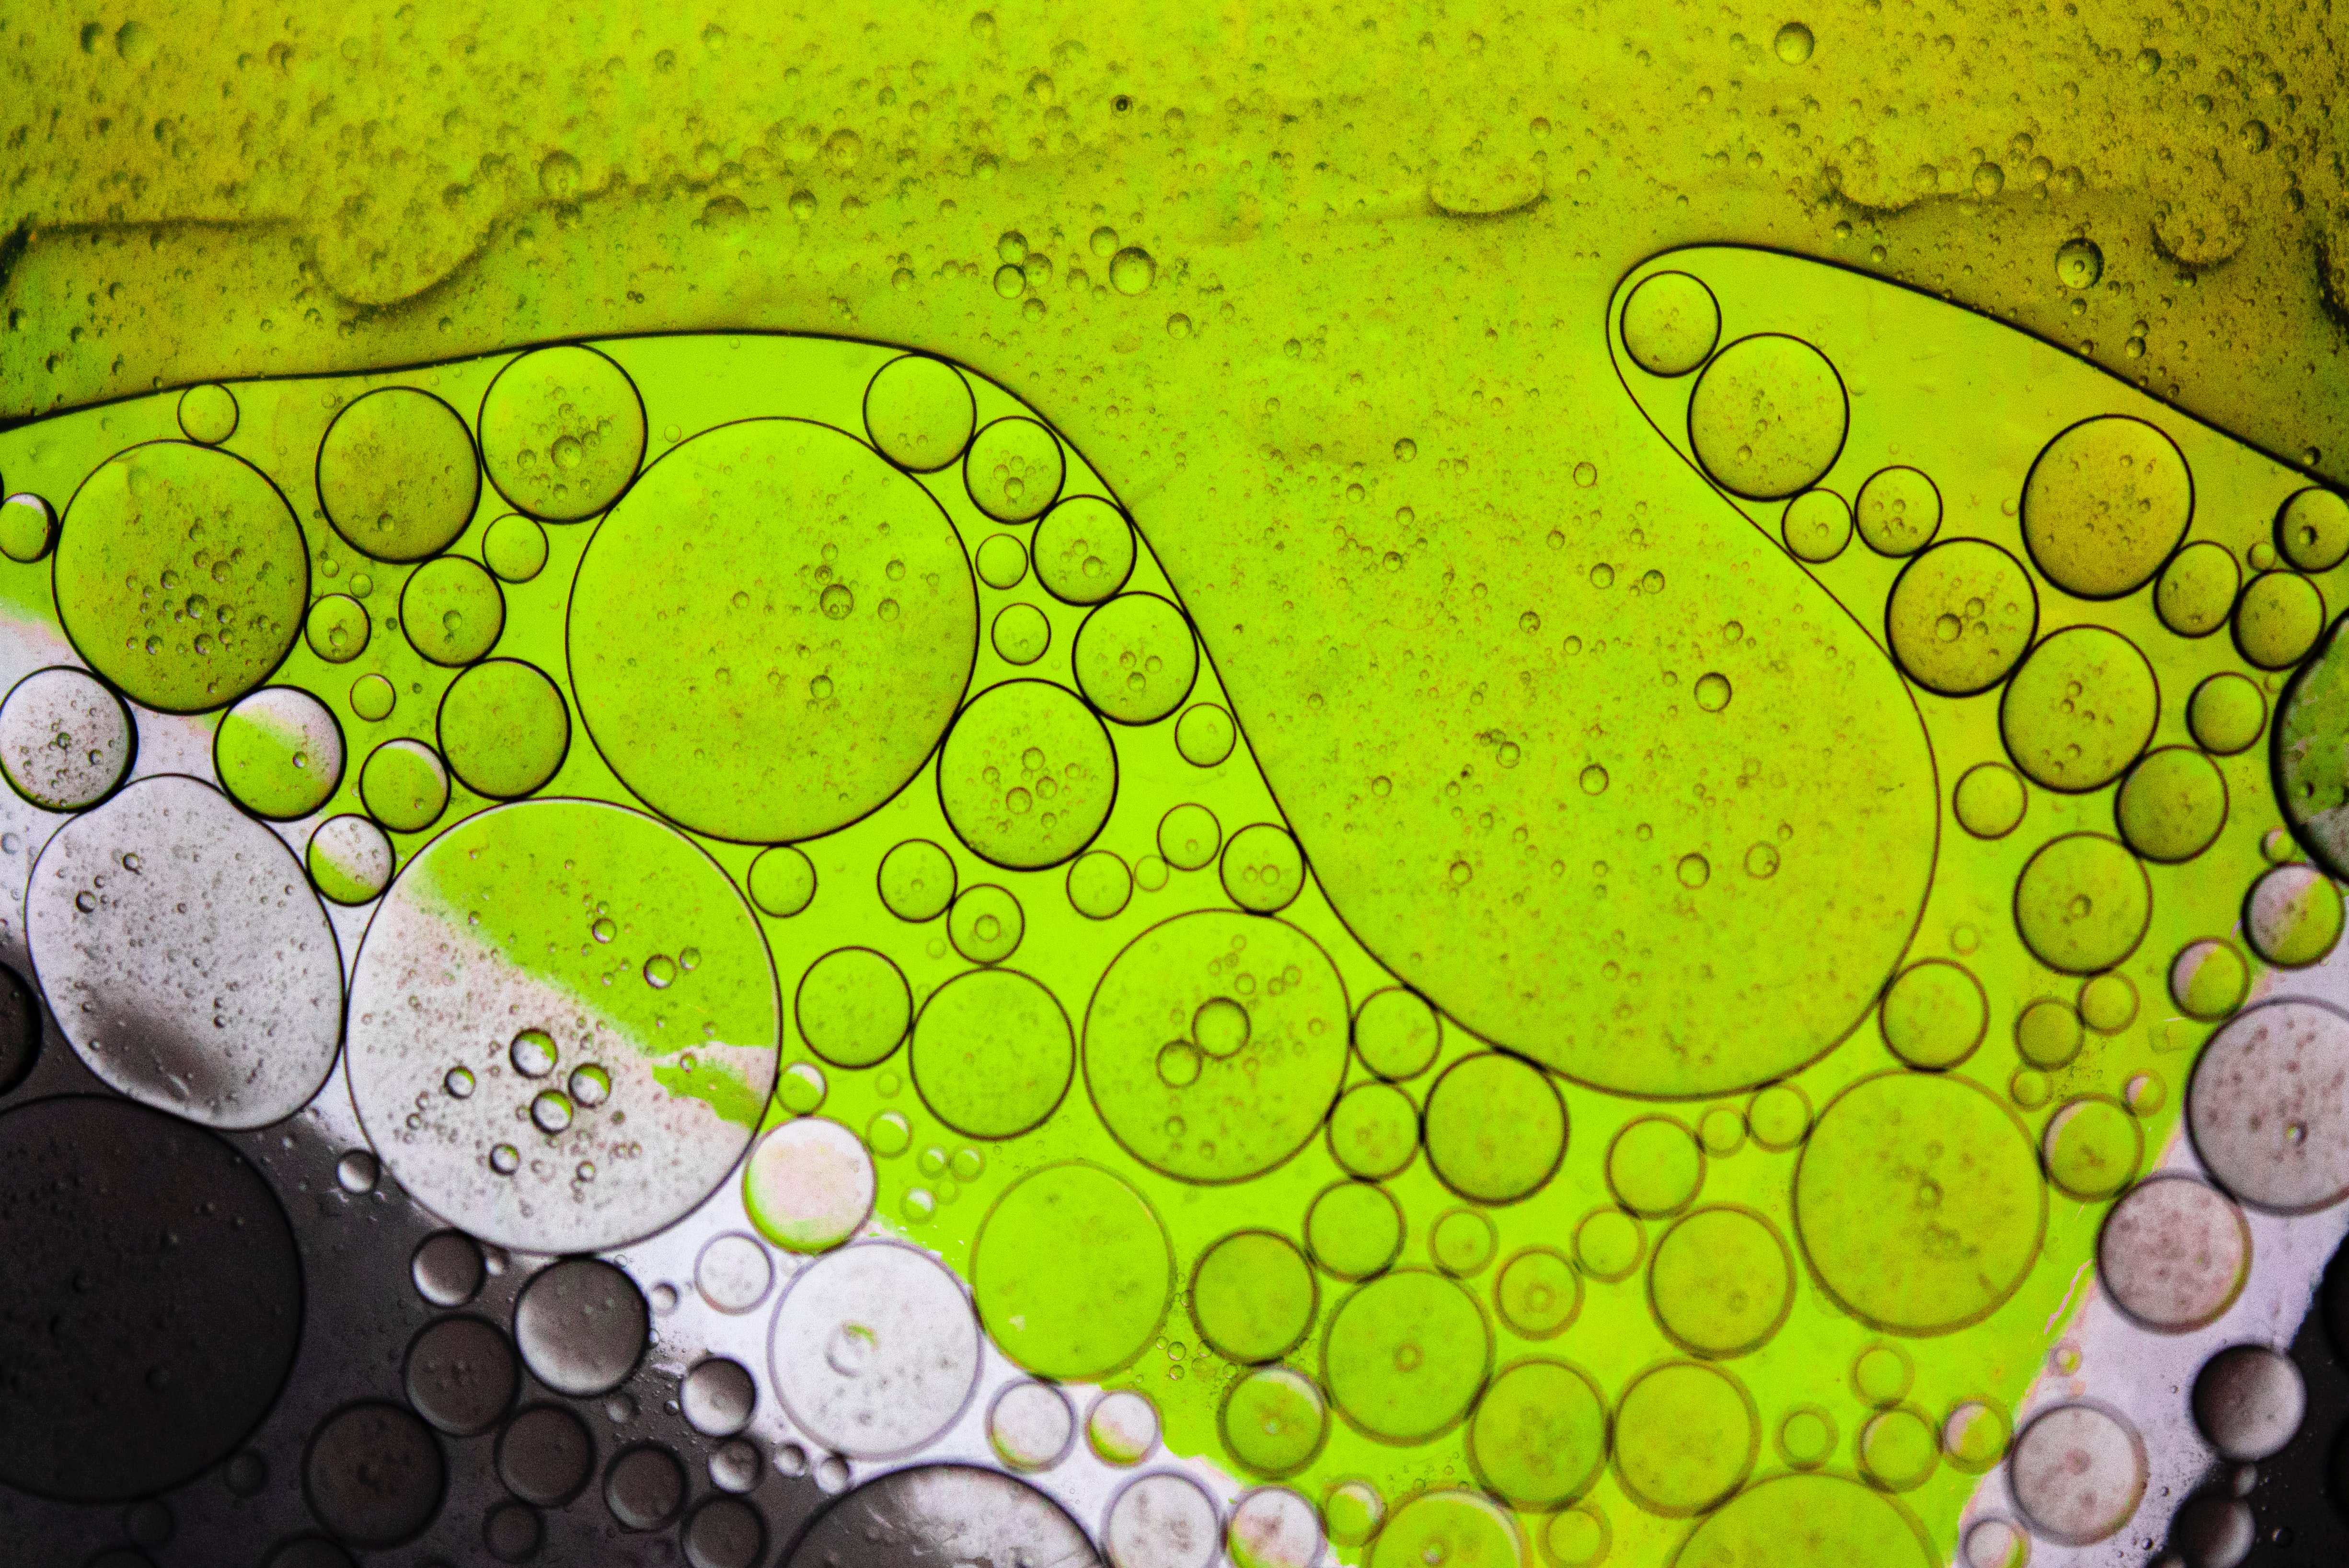 Скачать обои бесплатно Зеленый, Жидкость, Макро, Масло, Пузыри картинка на рабочий стол ПК